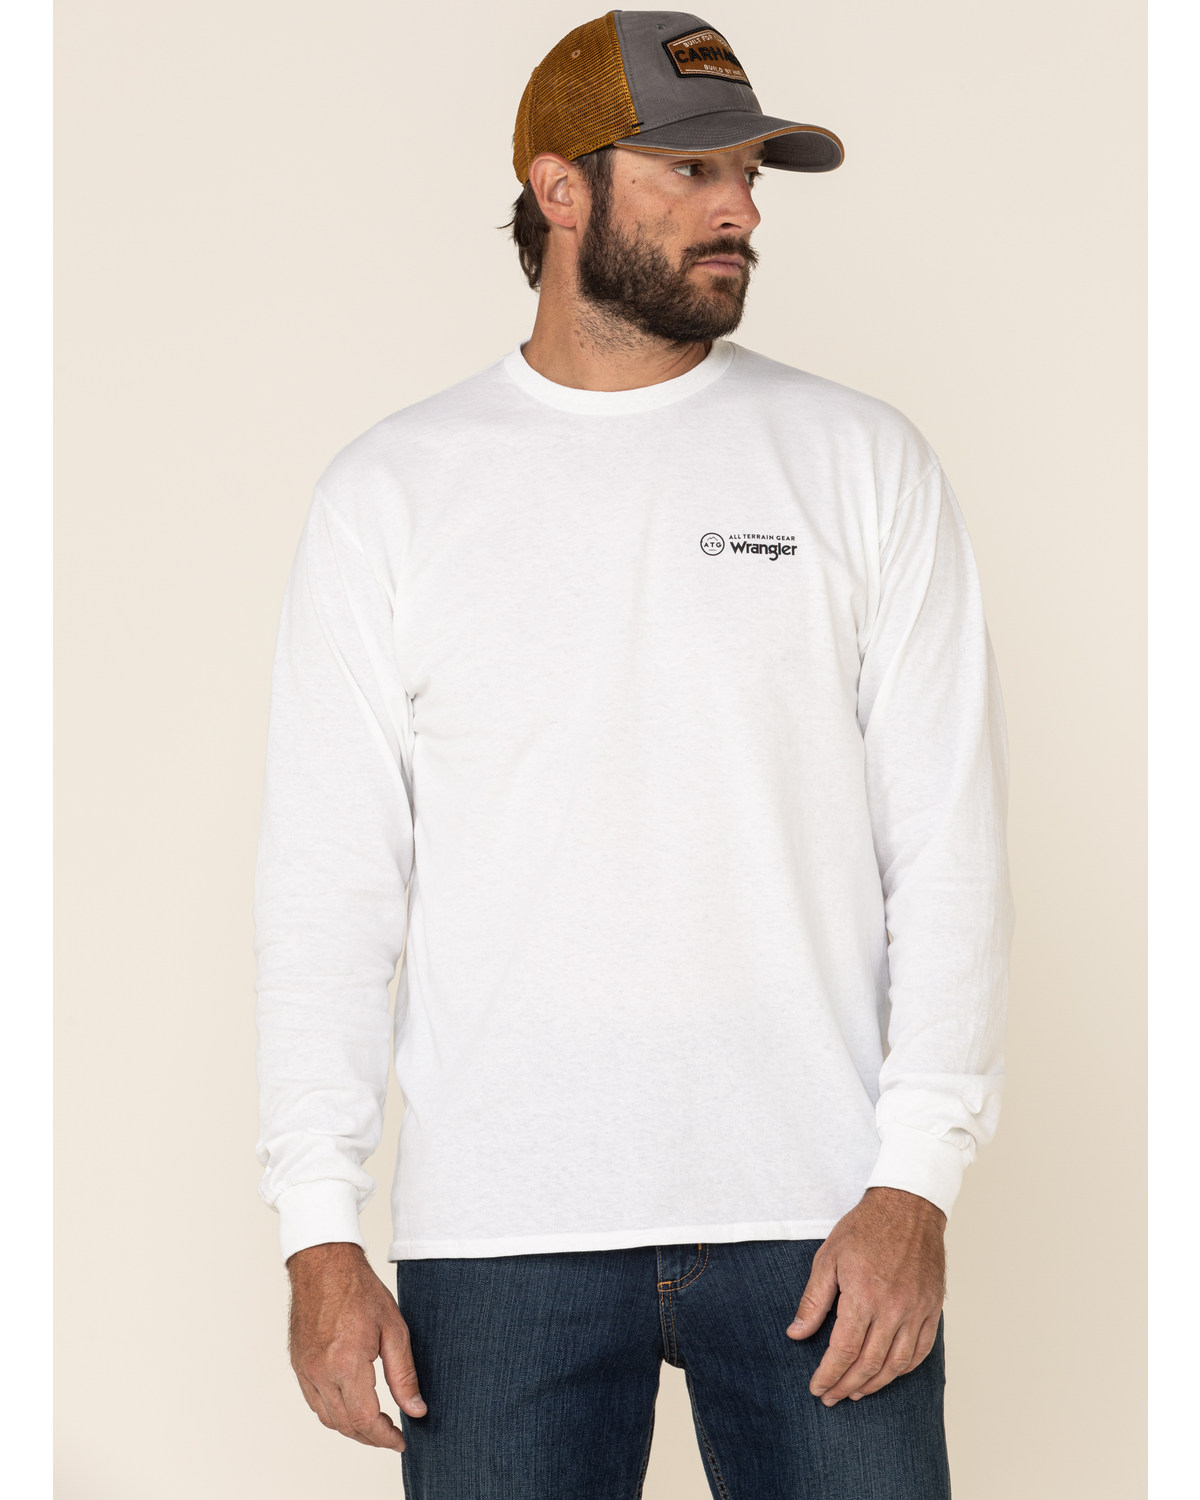 ATG by Wrangler Men's All-Terrain White Mountain Outline Graphic Long Sleeve T-Shirt